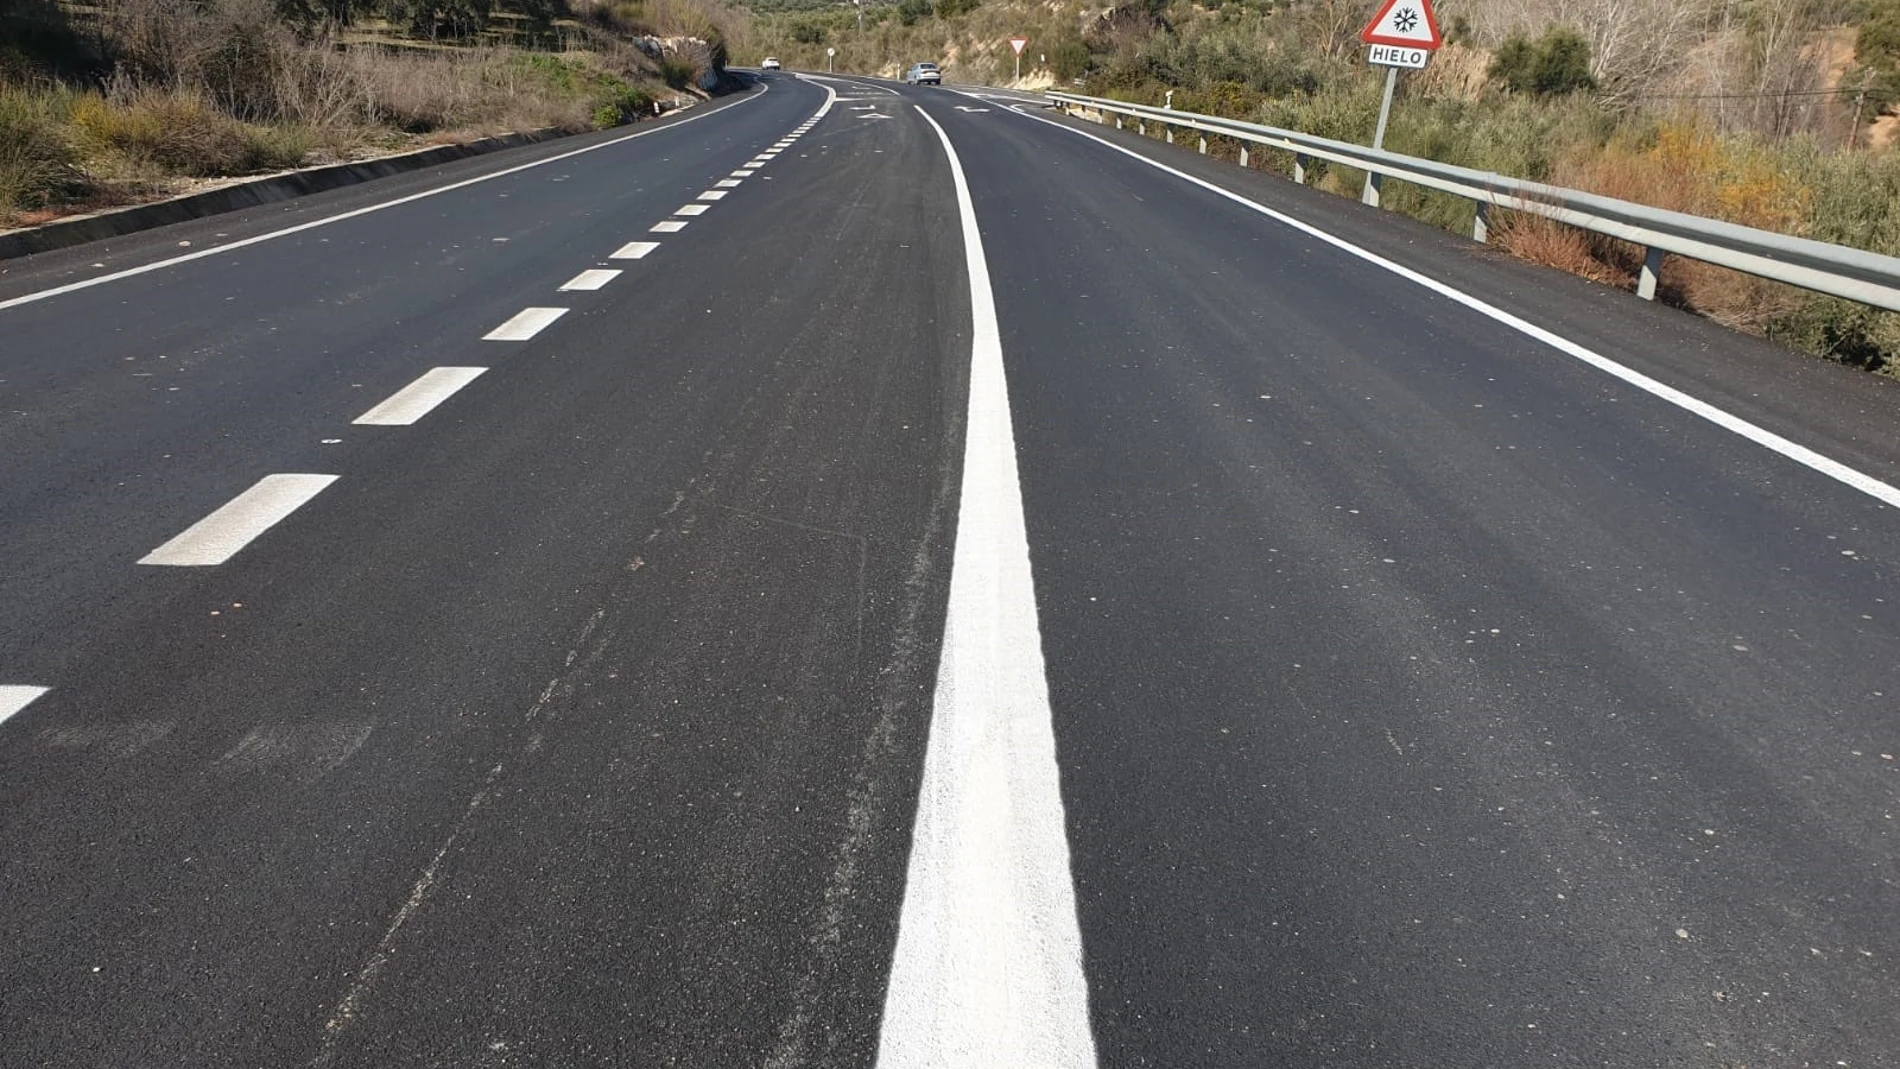 Córdoba.- Fomento refuerza el firme de la carretera A-339 a su paso por Priego de Córdoba